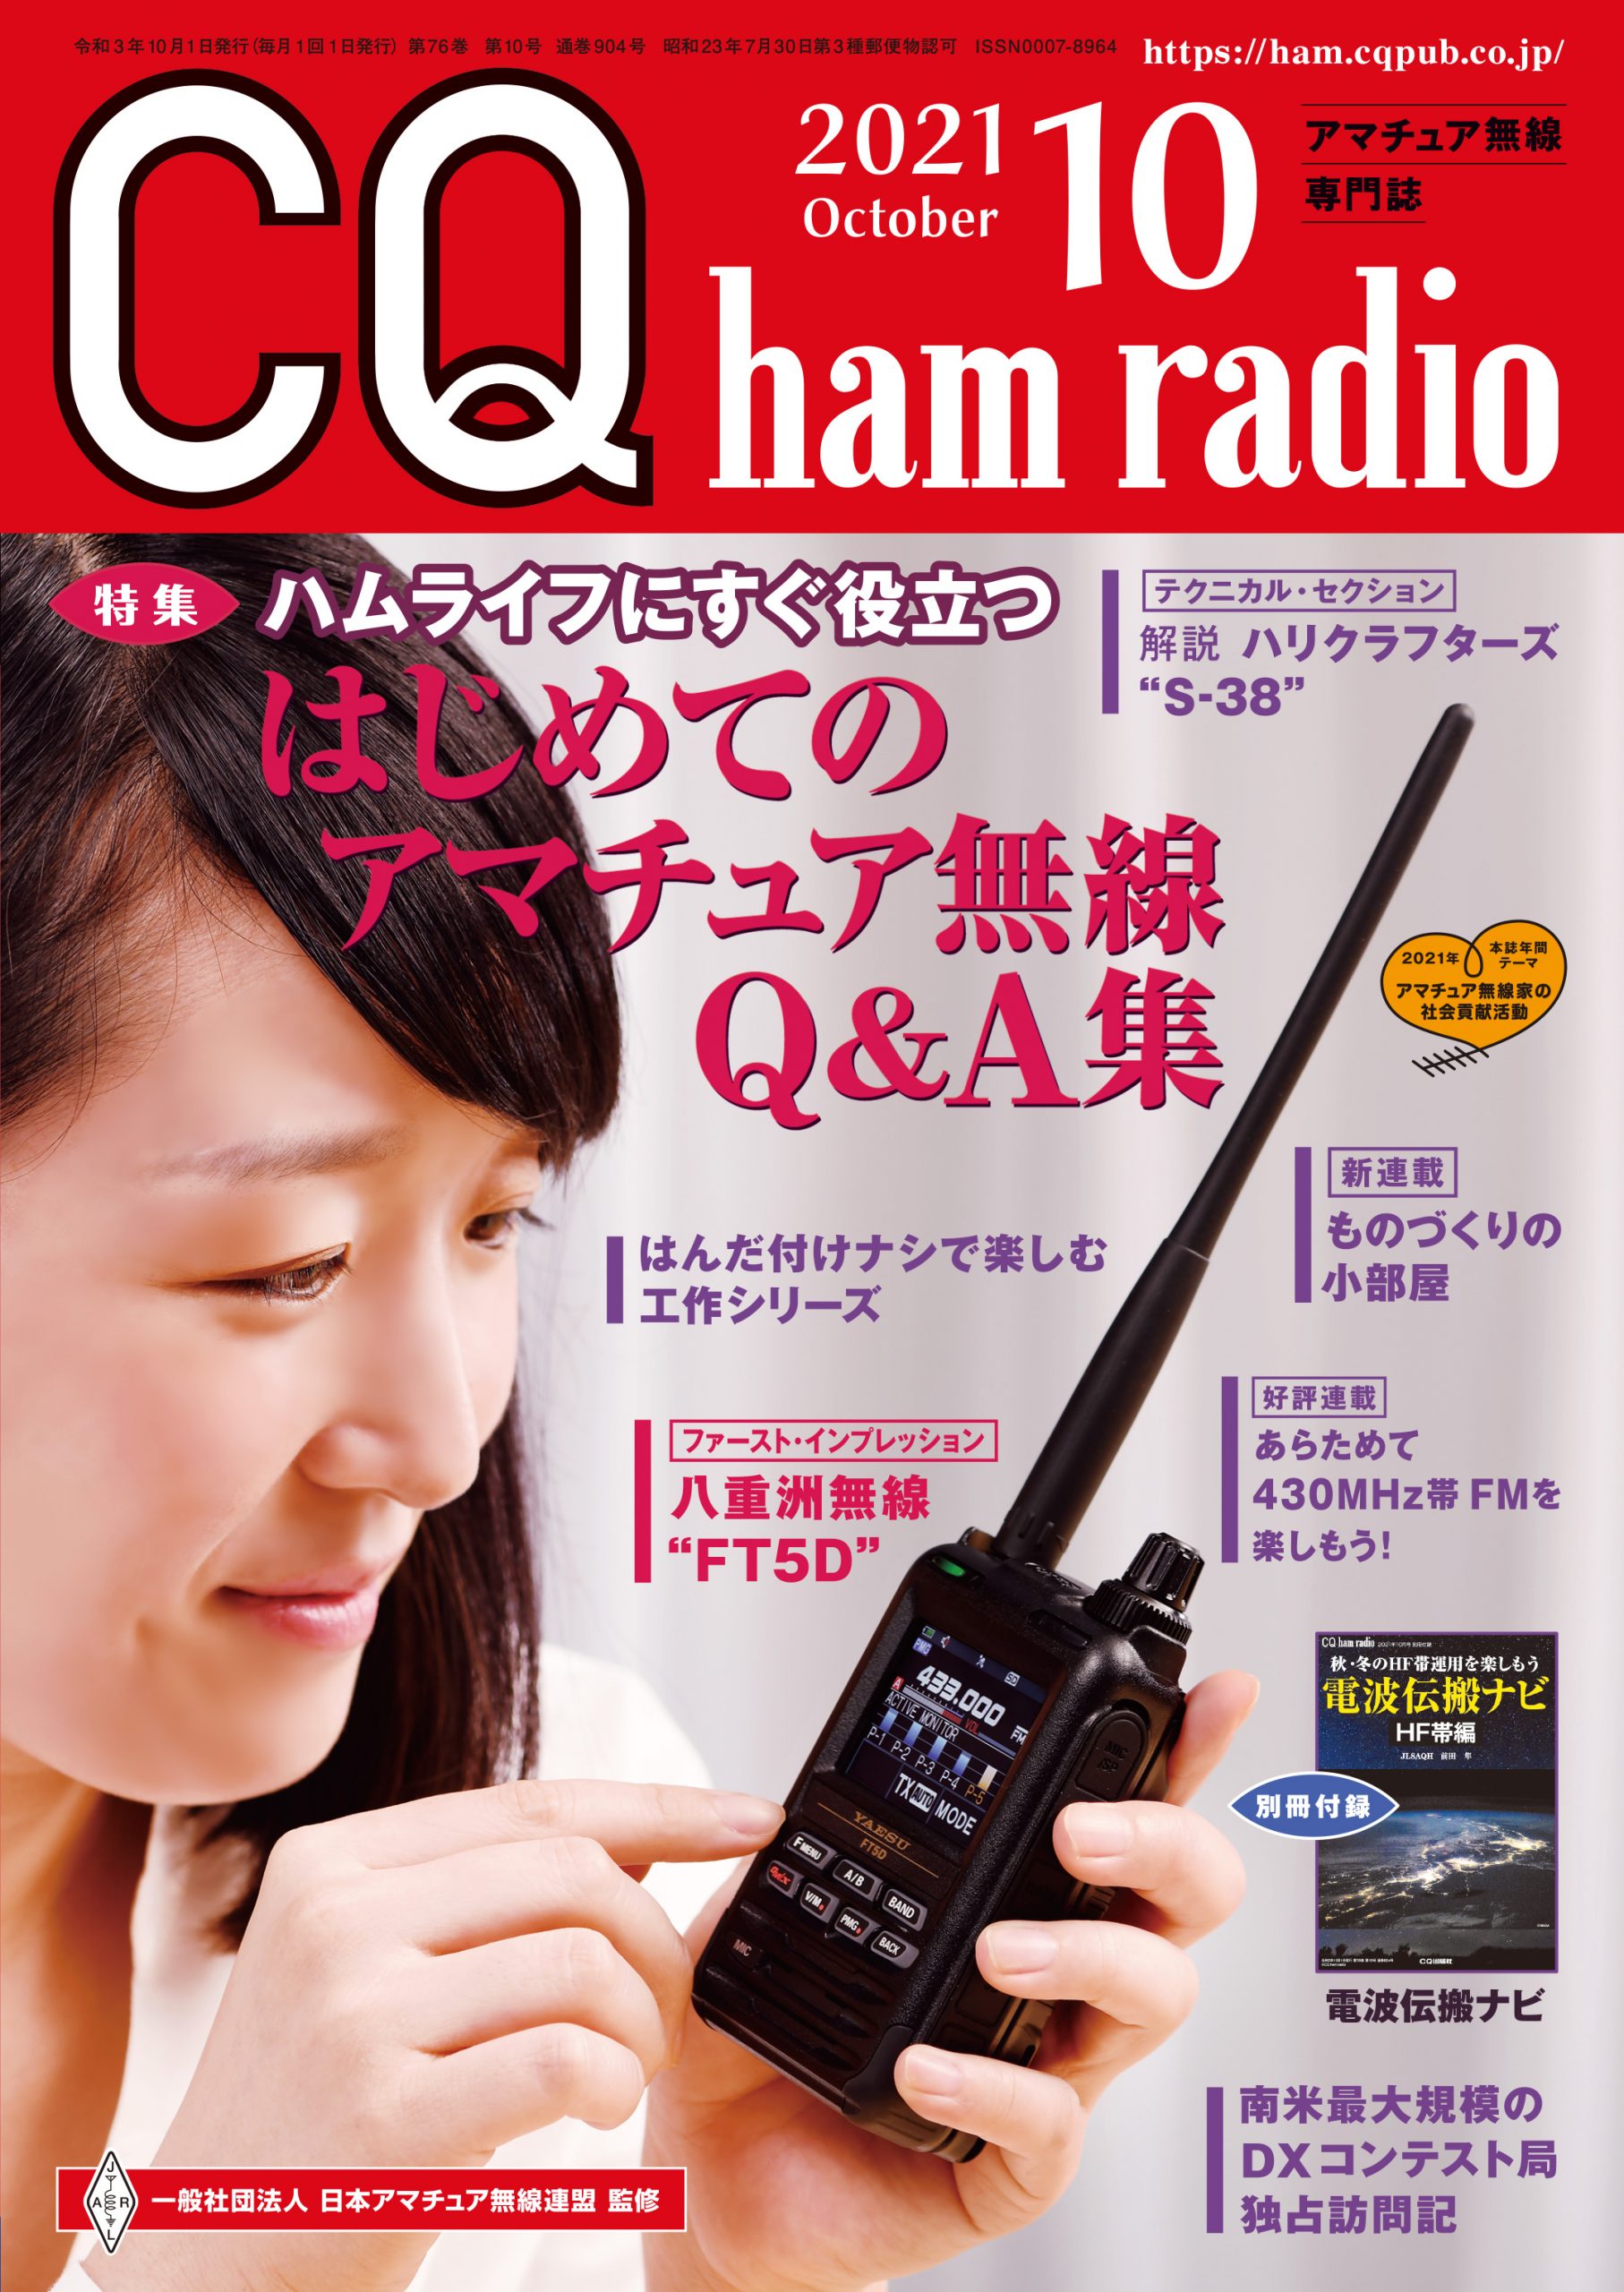 CQ ham radio 2021年 10月号